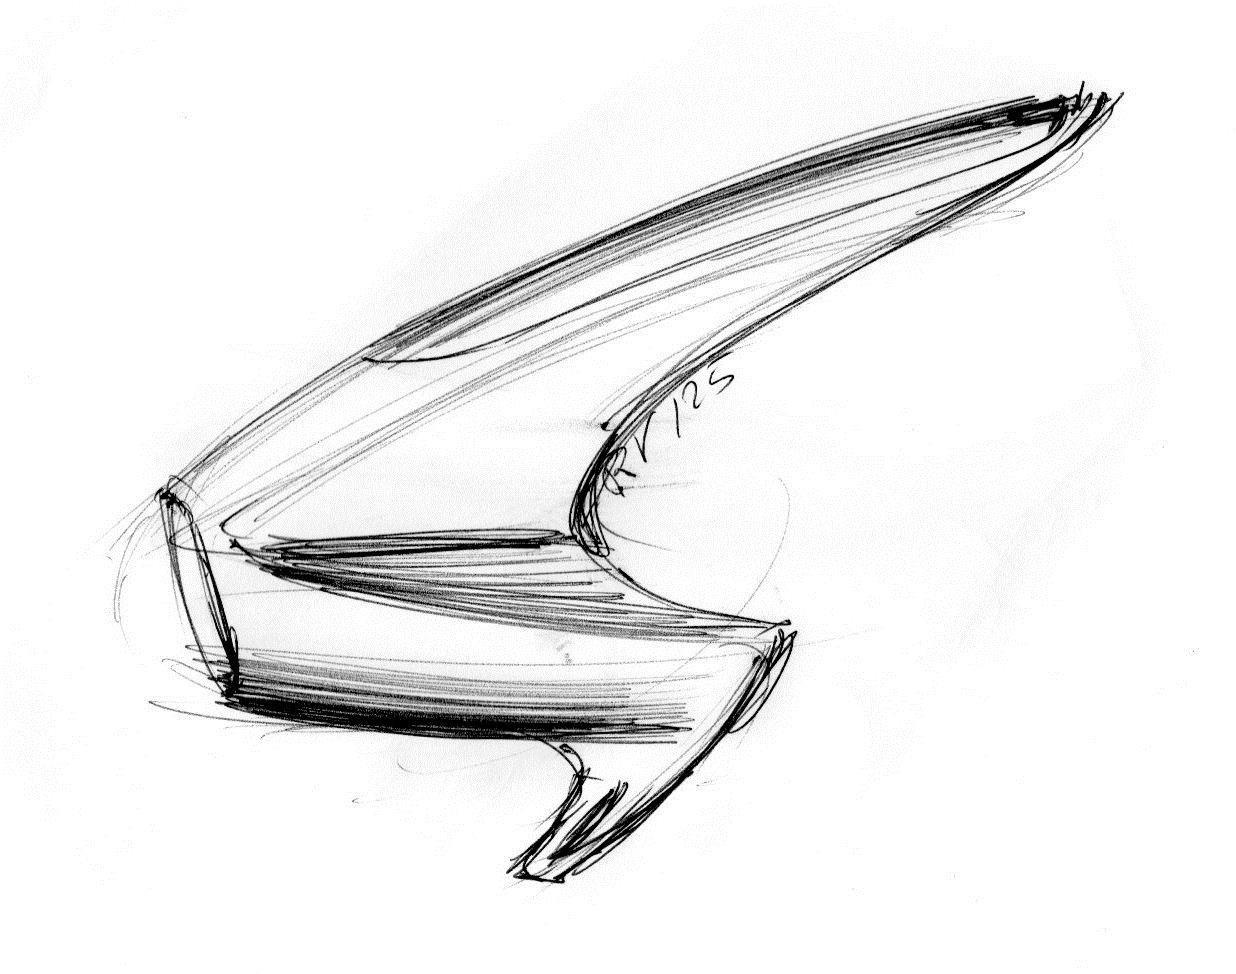 Gilera RV 125 disegno Paolo Martin